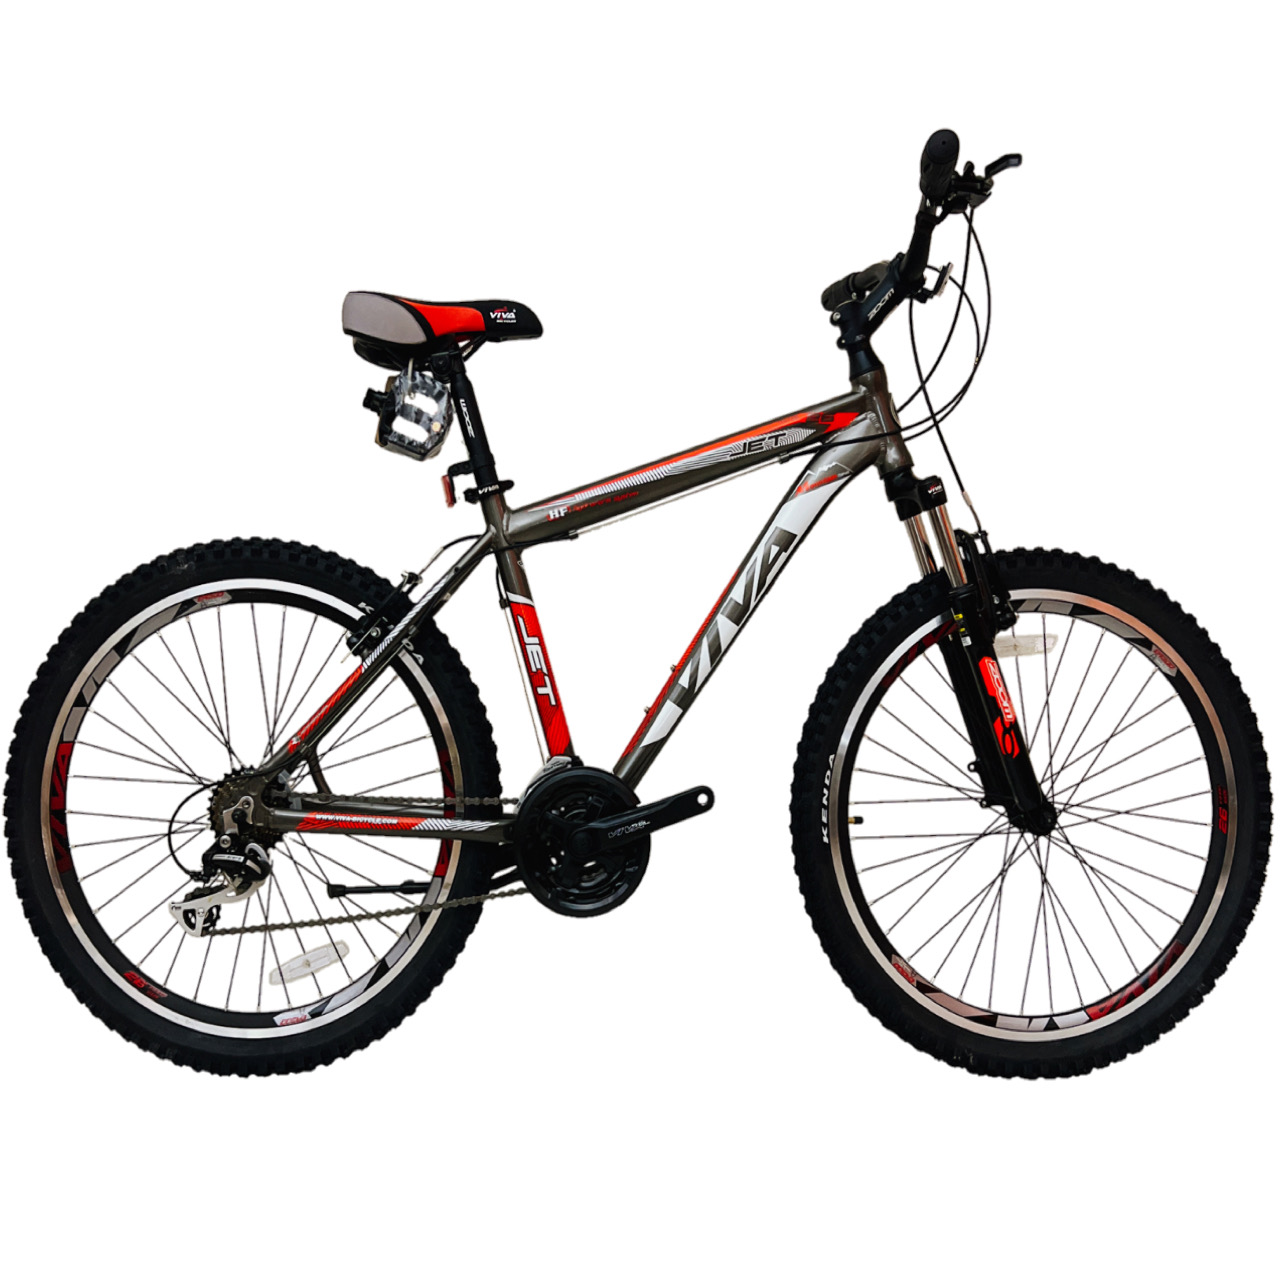 نکته خرید - قیمت روز دوچرخه کوهستان ویوا مدل JET سایز 26 خرید